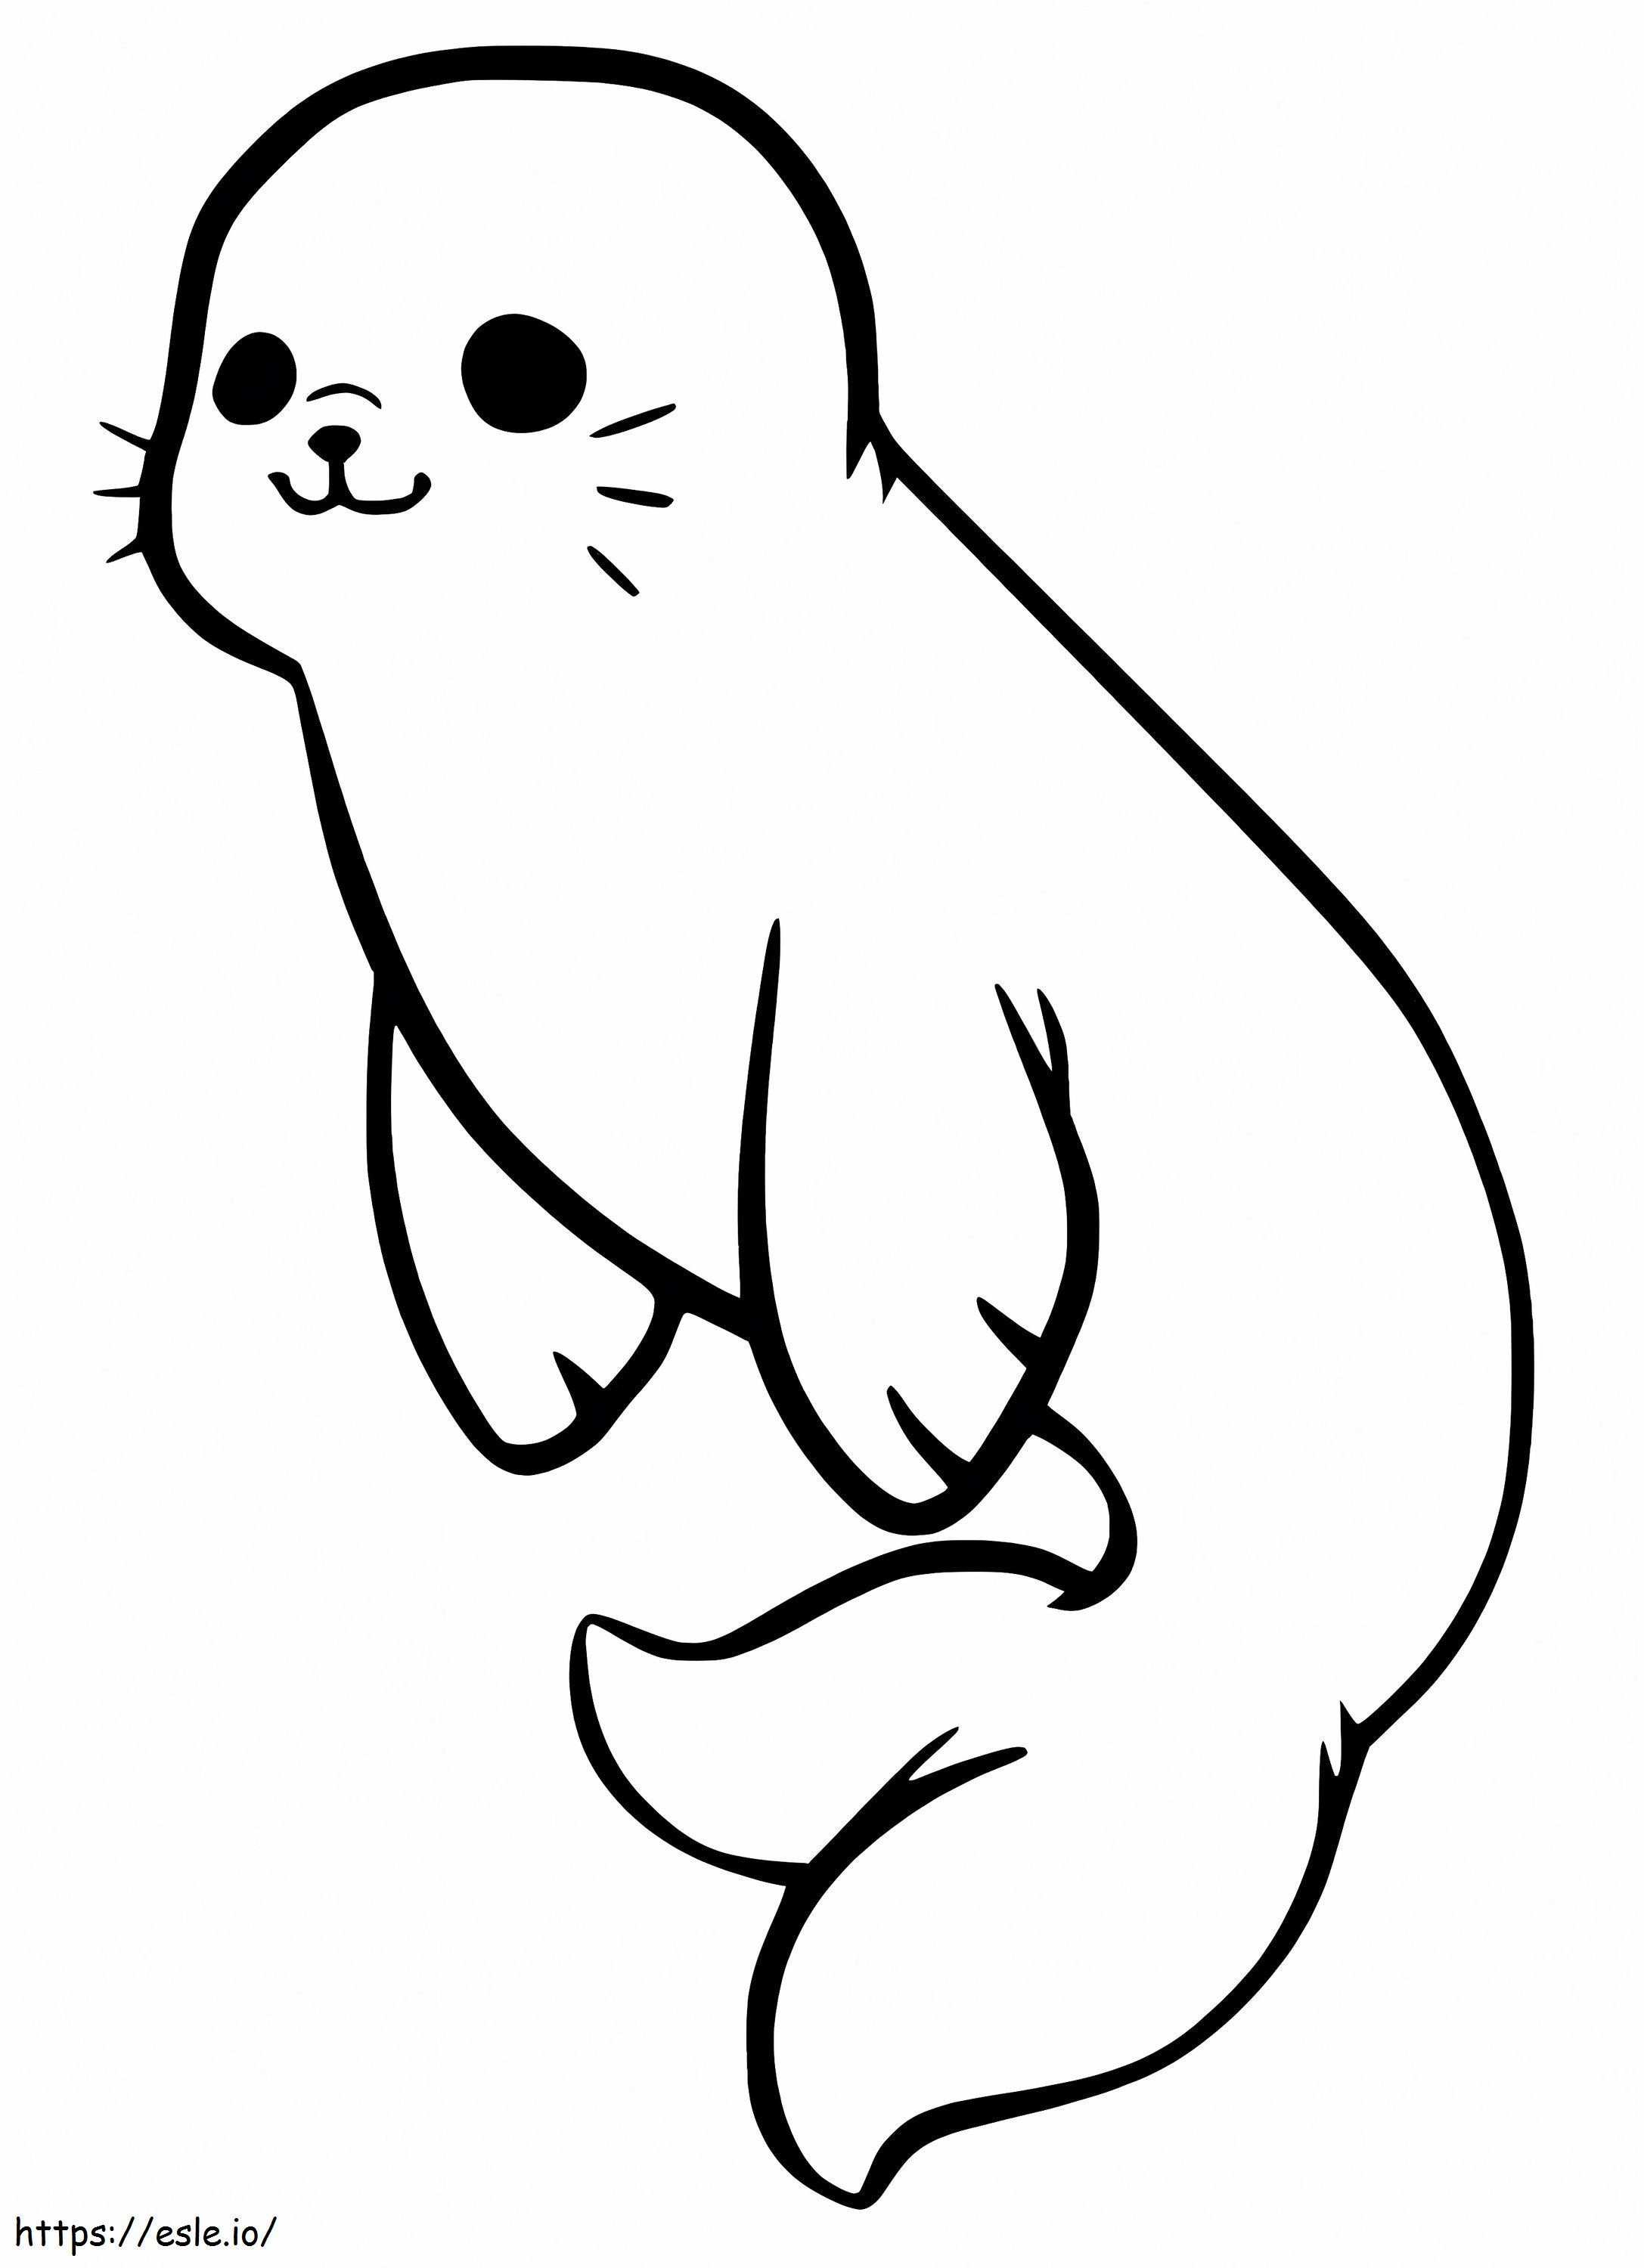 Simpatico cucciolo di foca da colorare